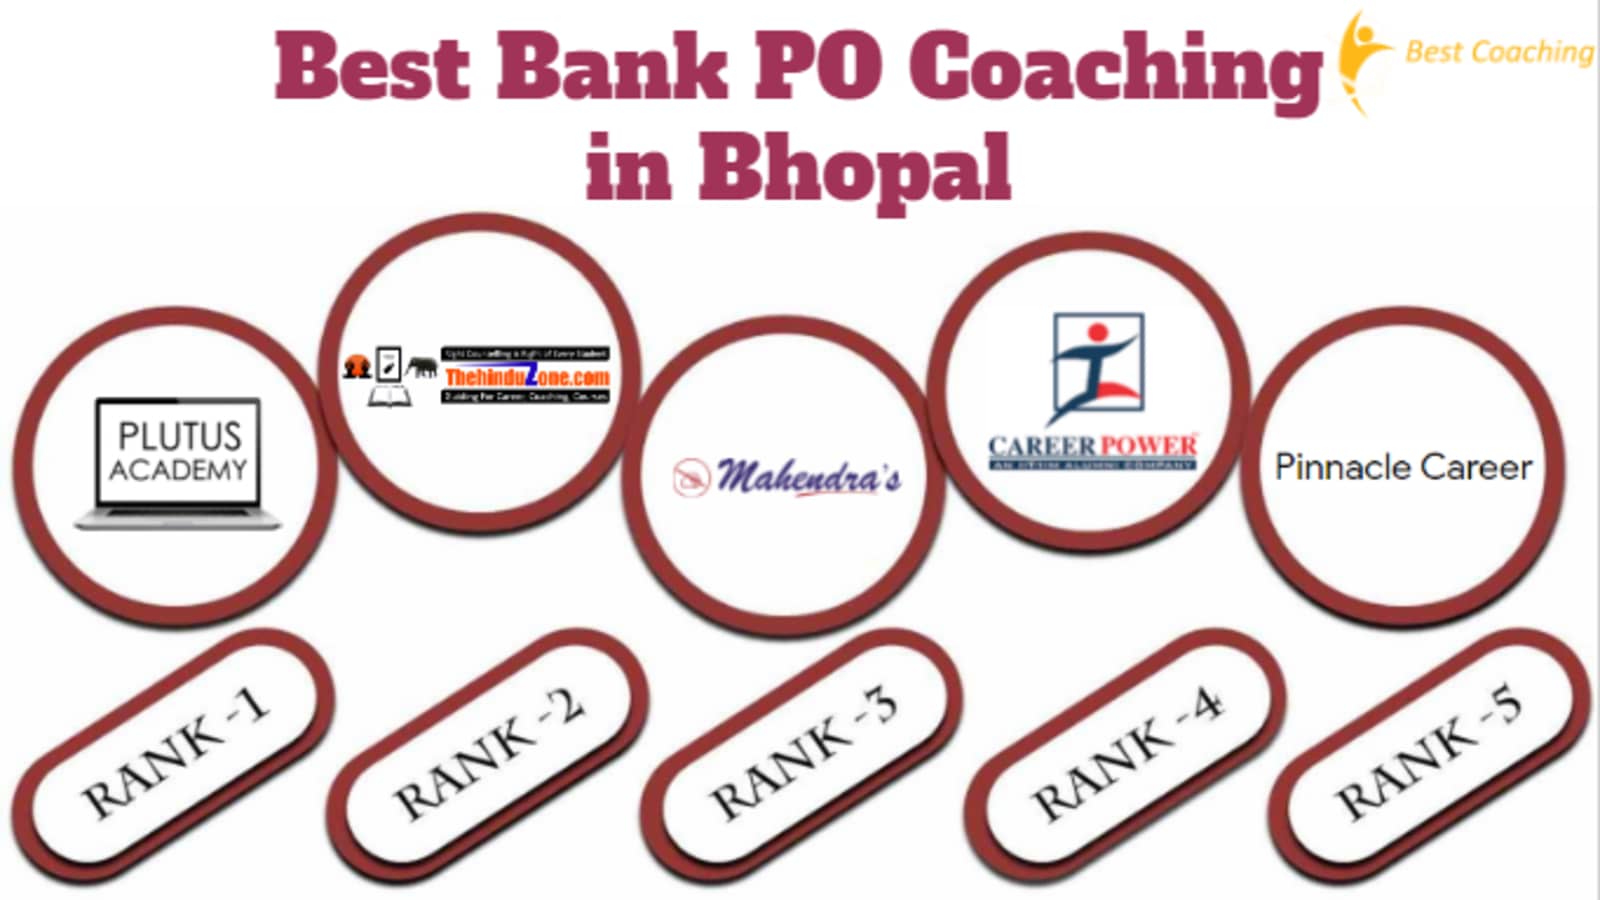 Best Bank PO Coaching in Bhopal